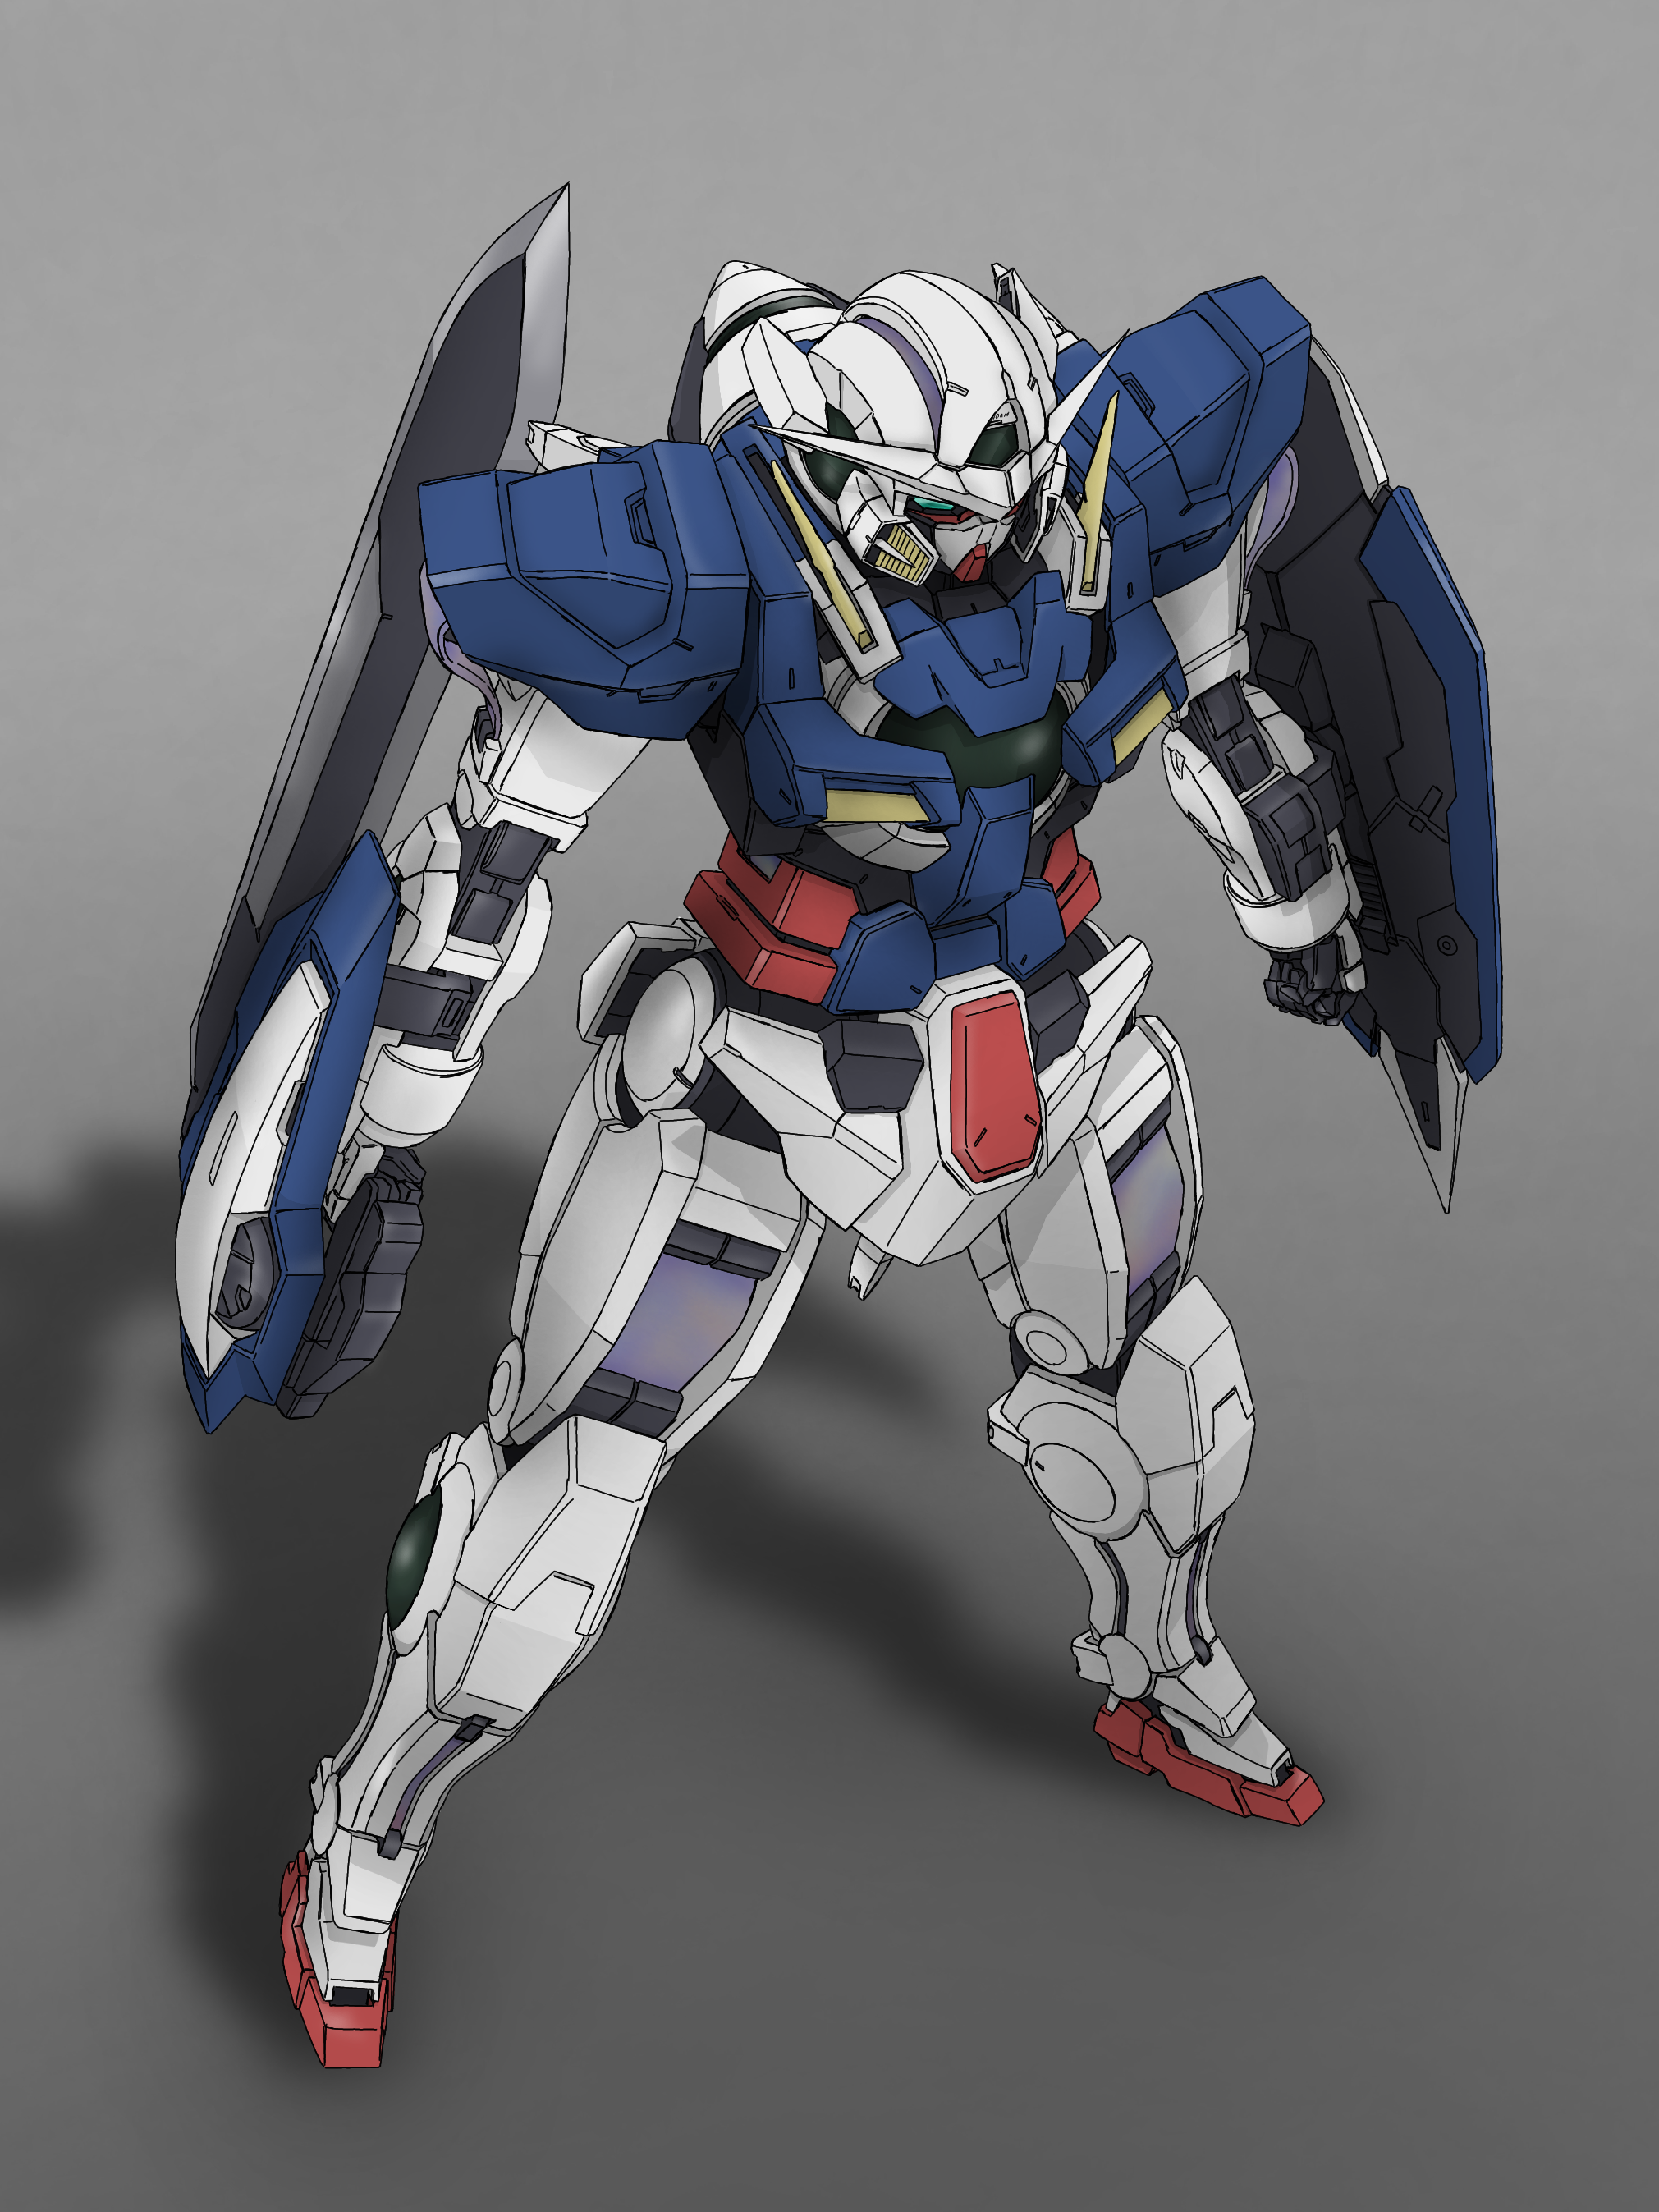 Anime Mechs Super Robot Taisen Gundam Mobile Suit Gundam 00 Gundam Exia Artwork Digital Art Fan Art 2021x2694